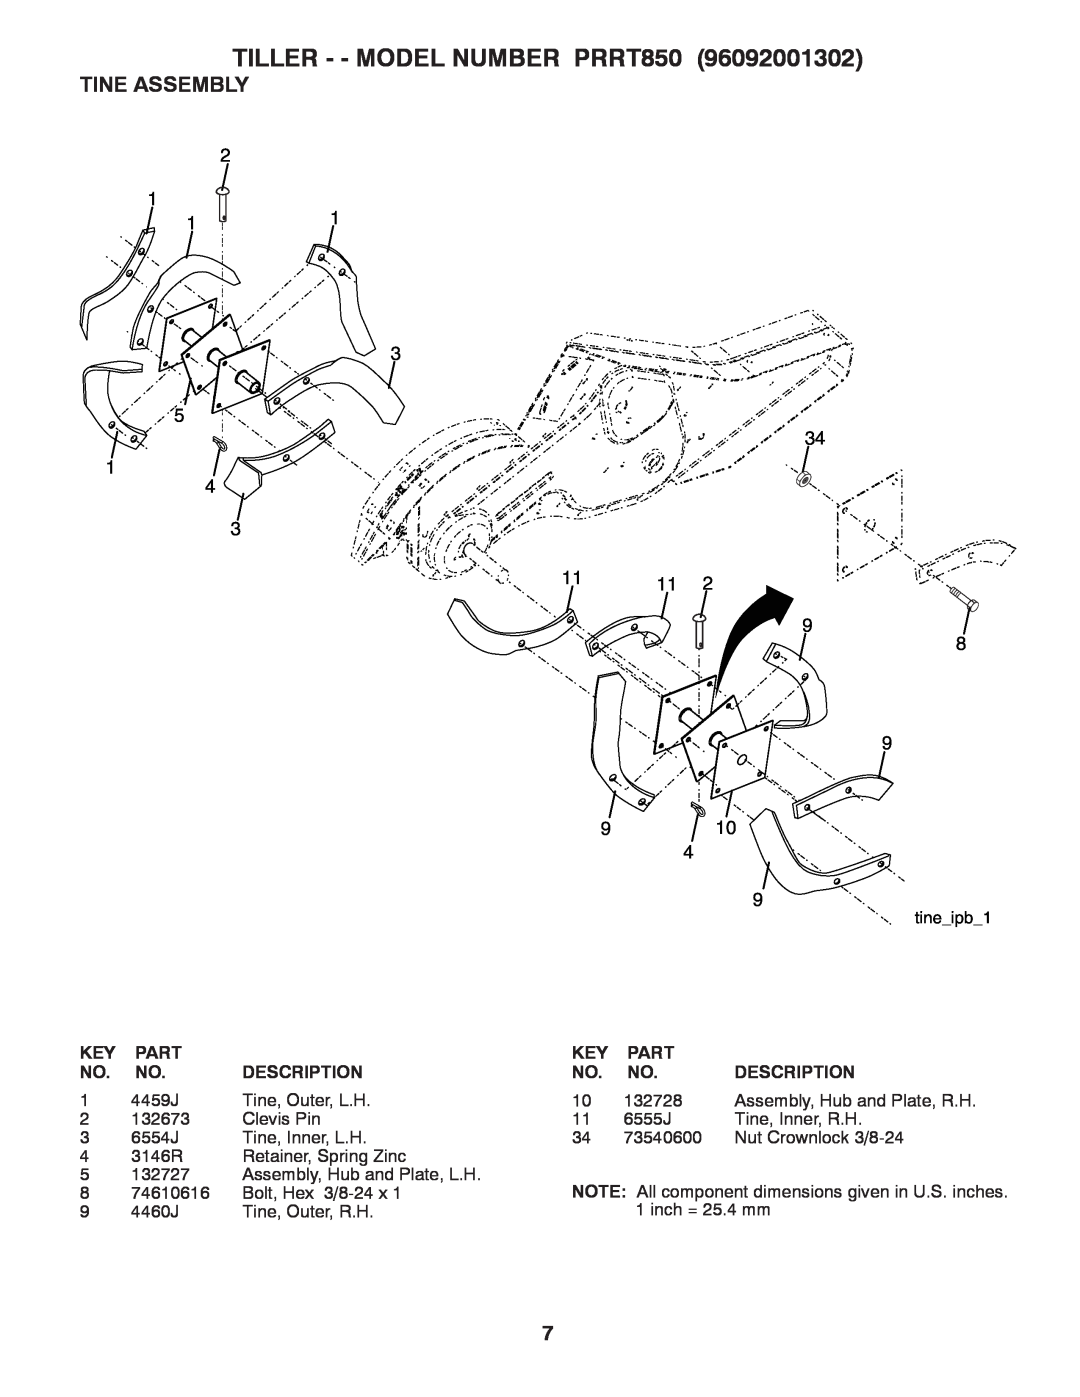 Poulan 96092001302 manual Tine Assembly, TILLER - - MODEL NUMBER PRRT850, Part, Description 